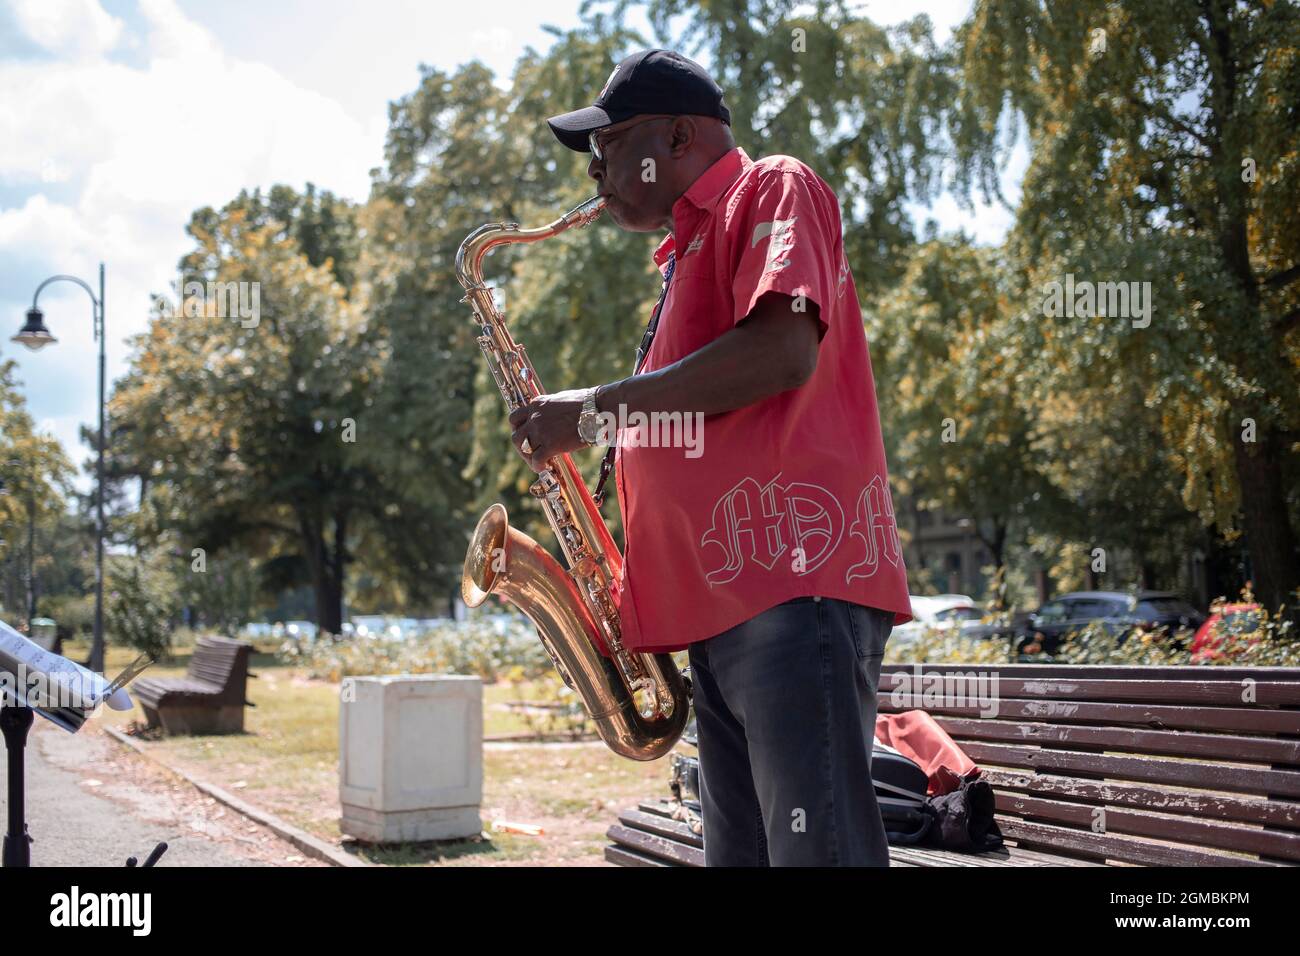 Belgrad, Serbien, 21. Jul 2021: Portrait eines Jazzmusikers, der an der Donaupromenade in Zemun Saxophon spielt Stockfoto